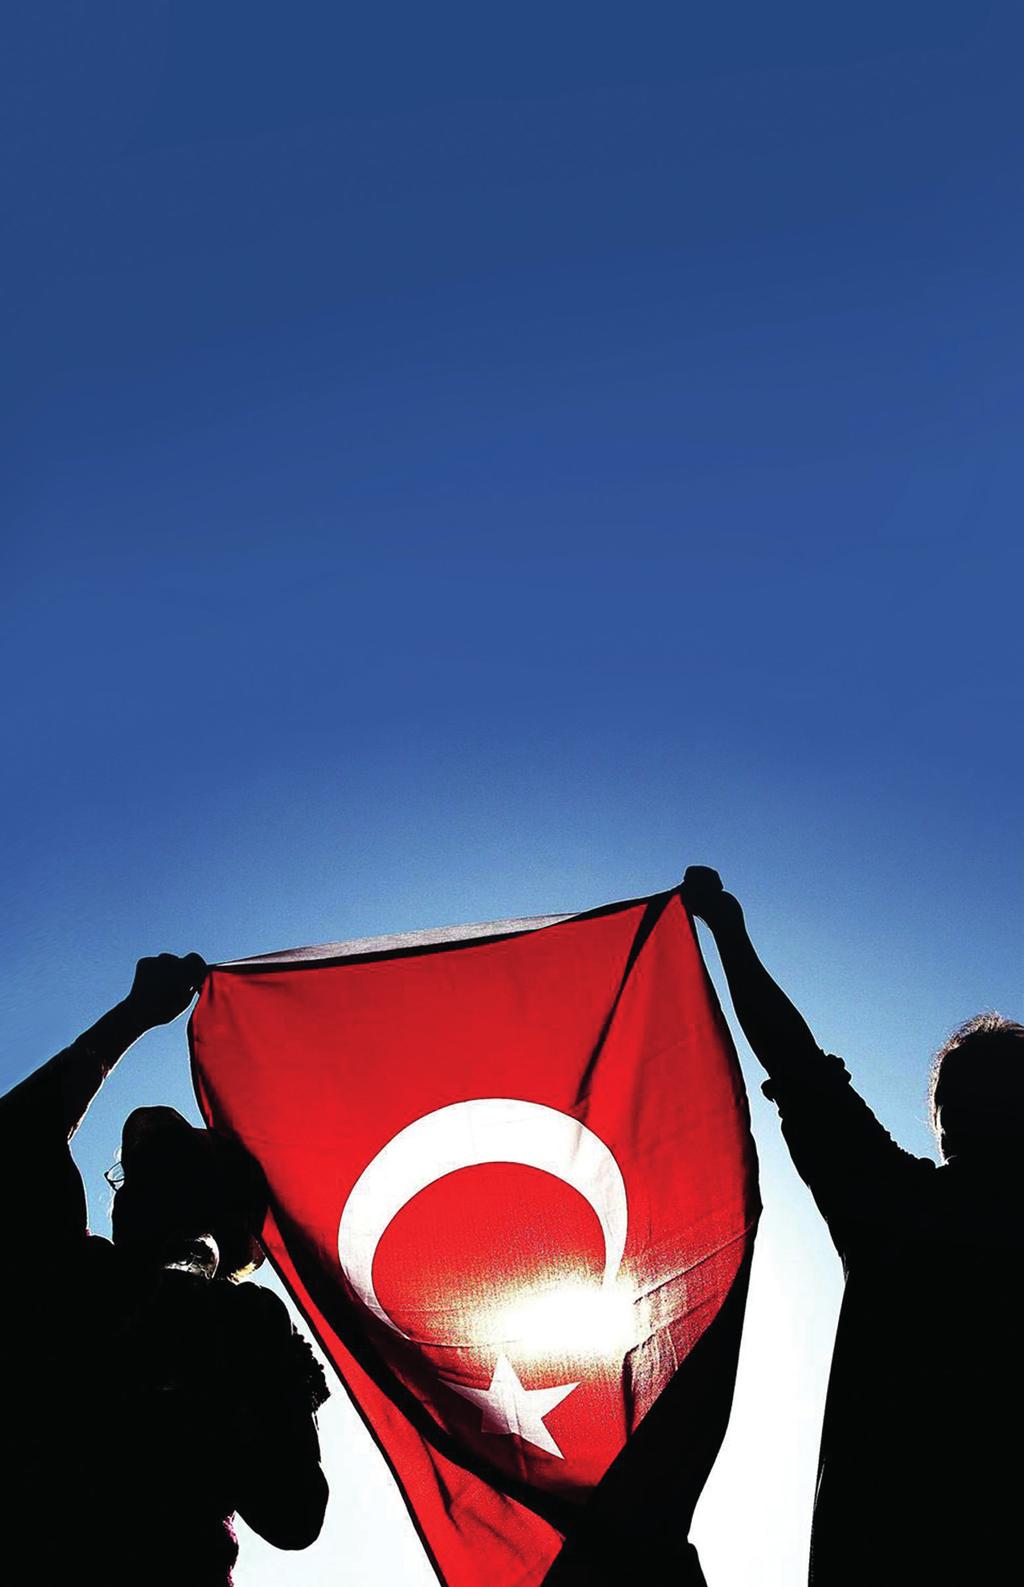 "Ey Türk Gençliği! Birinci vazifen, Türk istiklâlini, Türk Cumhuriyetini, ilelebet, muhafaza ve müdafaa etmektir. Mevcudiyetinin ve istikbalinin yegâne temeli budur.